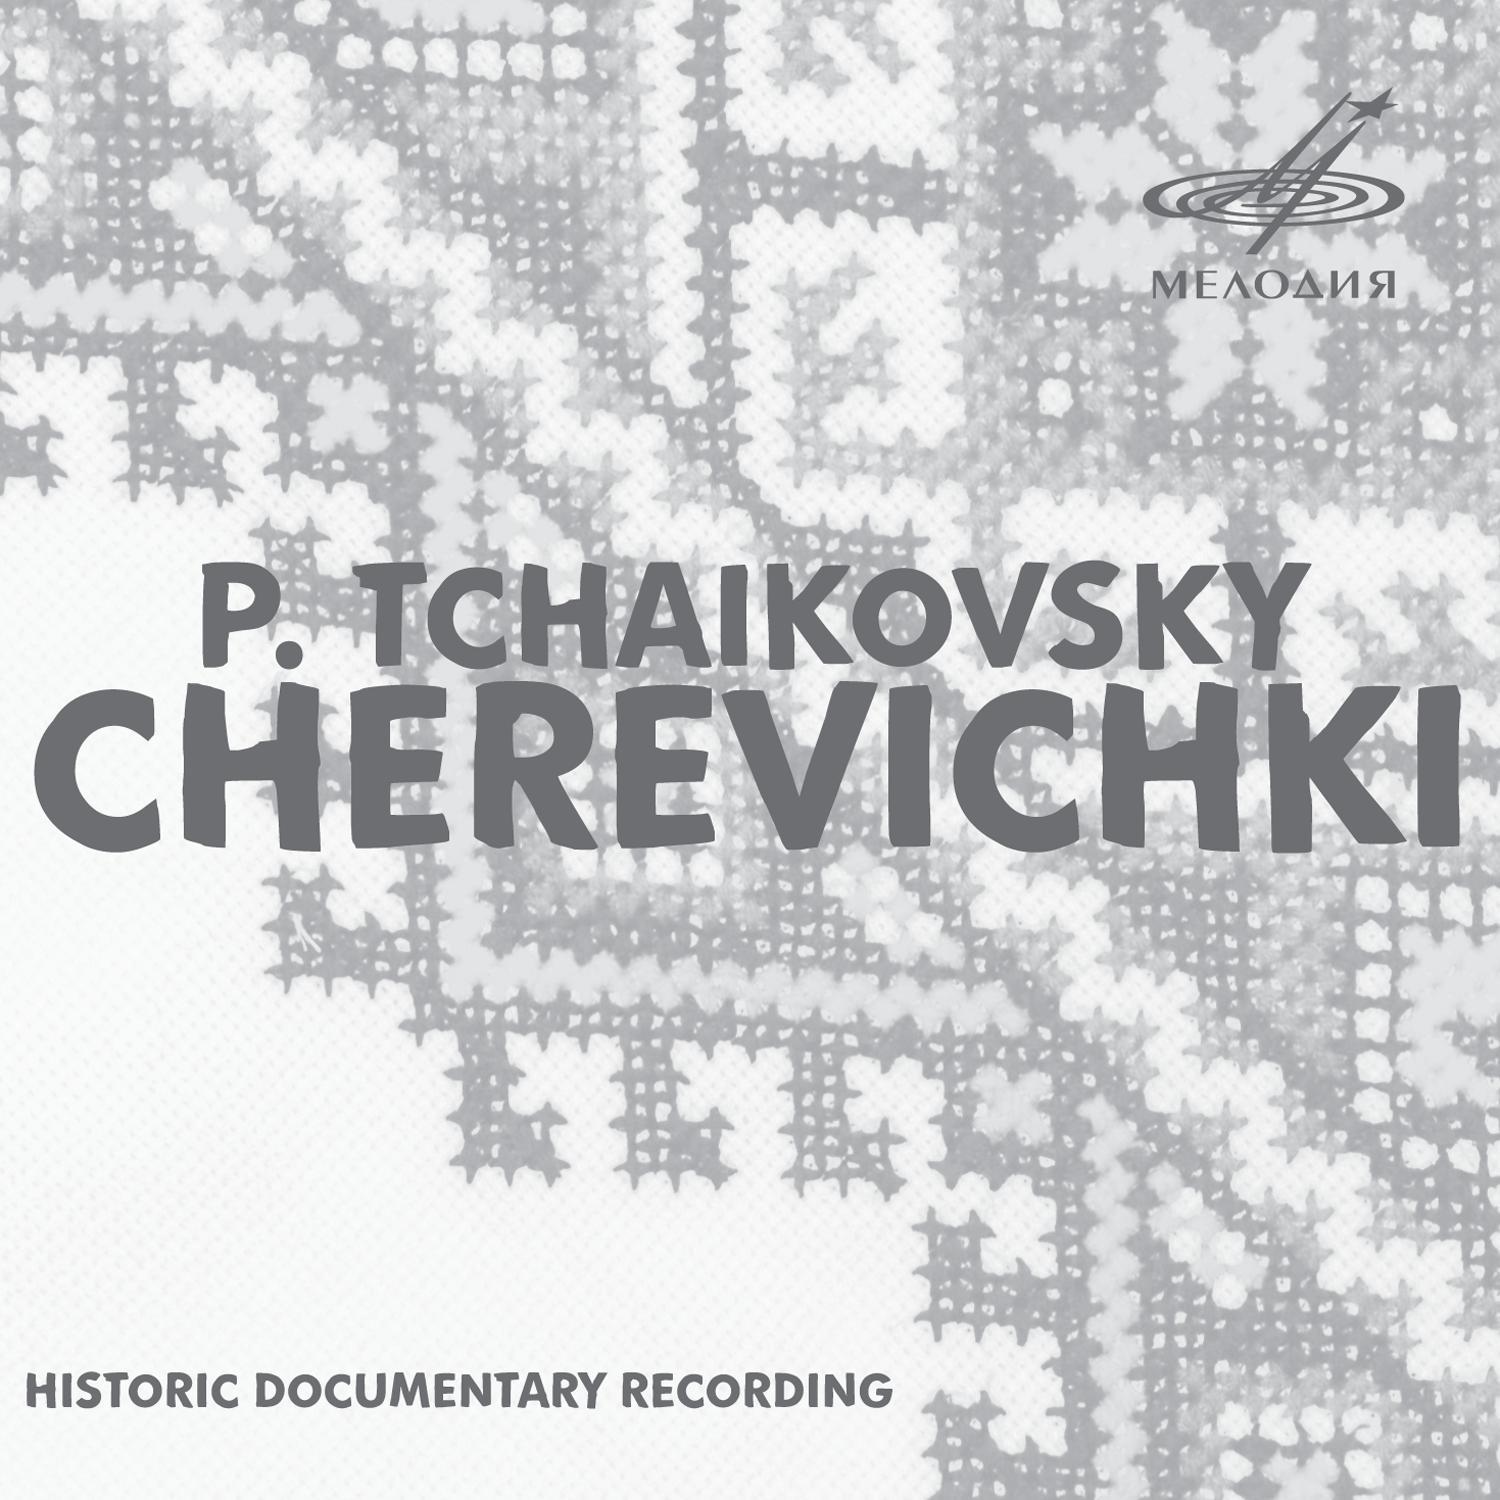 Alexander Melik-Pashayev - Cherevichki, Act I, Scene II: Scene 